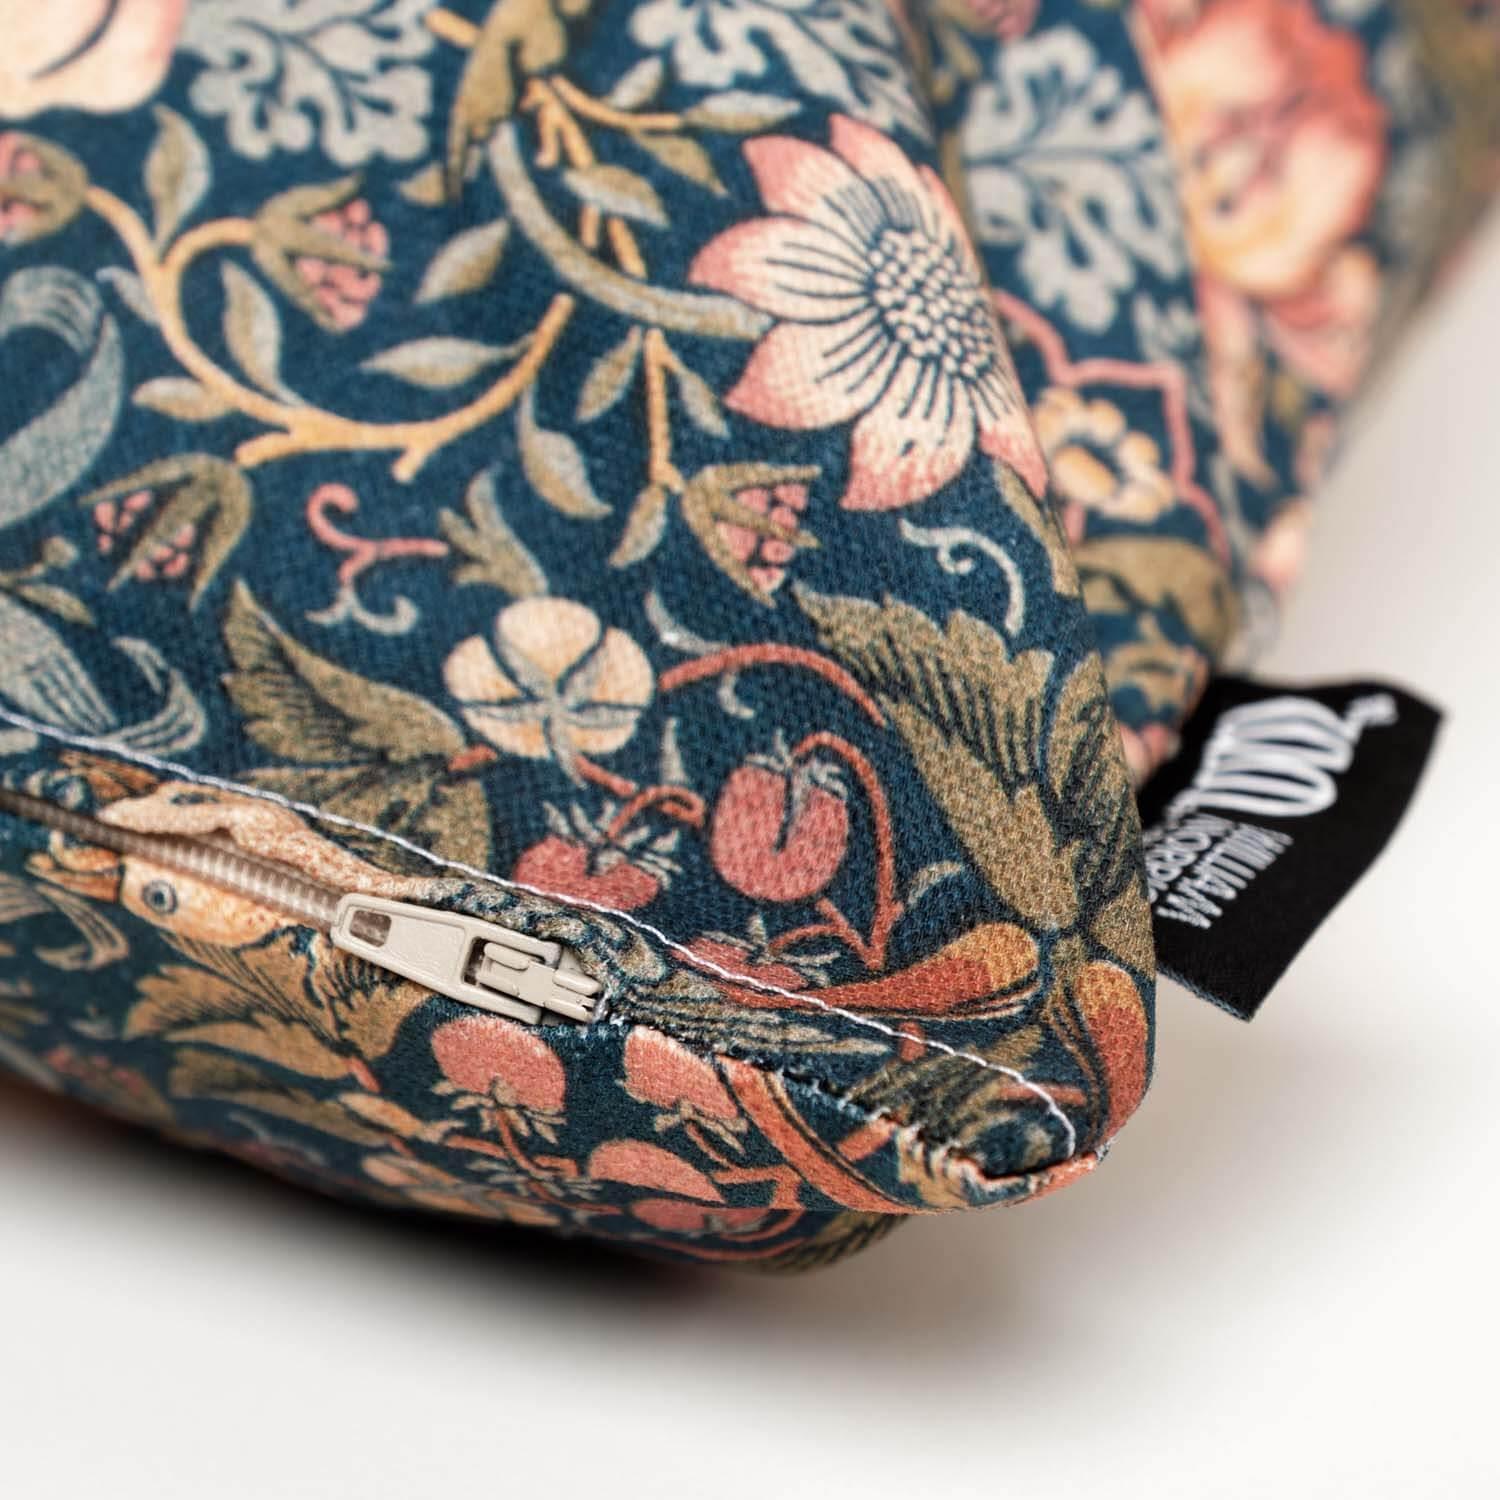 Strawberry Thief - William Morris Cushion - Handmade Cushions UK - WeLoveCushions